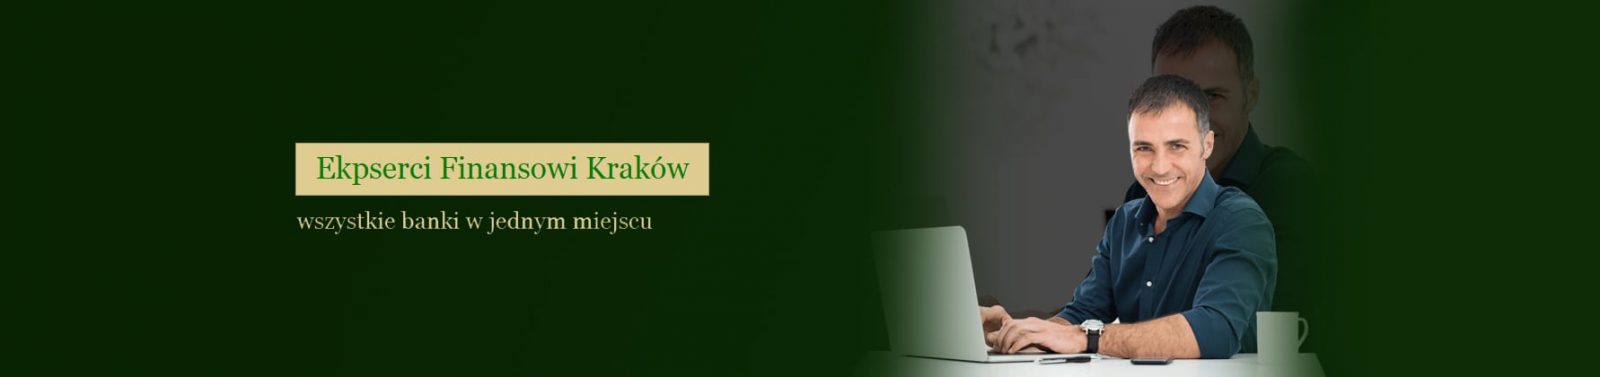 Doradca-Finansowy-Krakow-kredyty